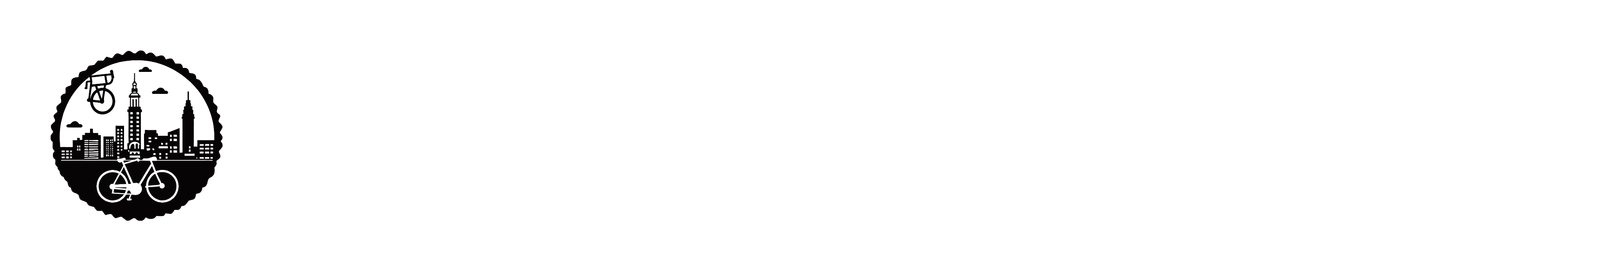 logo-transparent-png